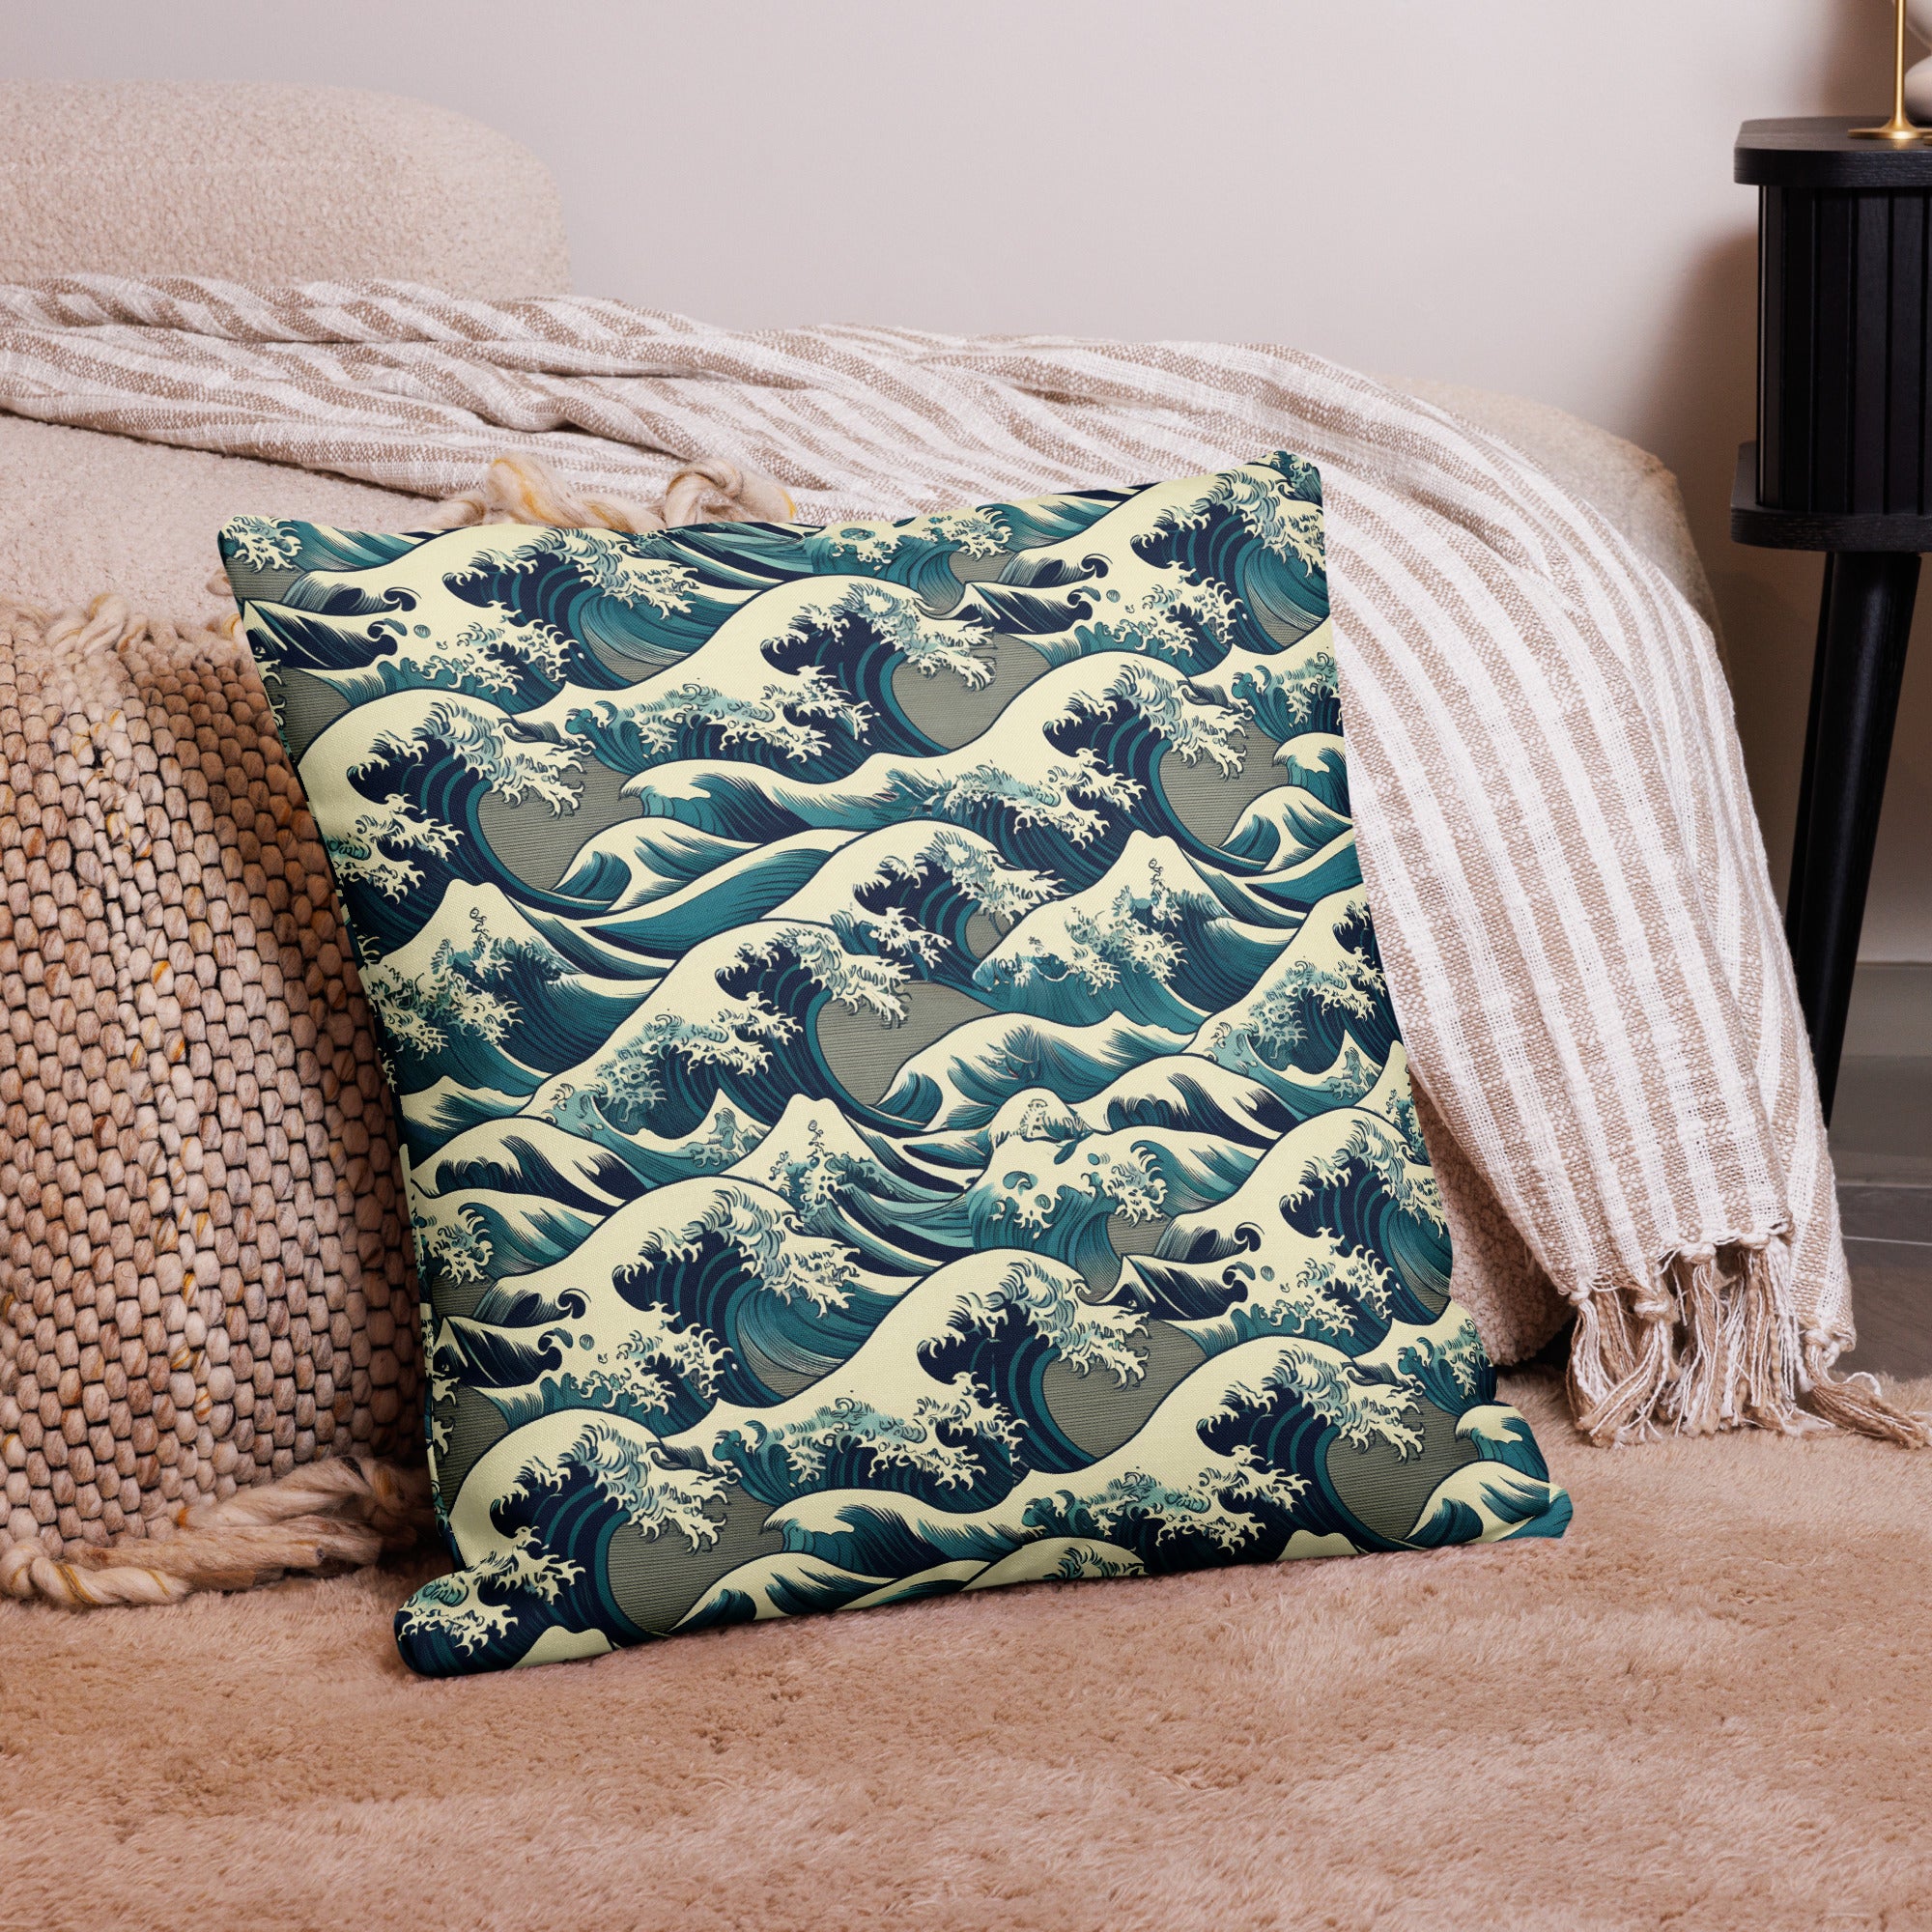 Hokusai 'The Great Wave off Kanagawa' Famous Painting Premium Pillow | Premium Art Cushion